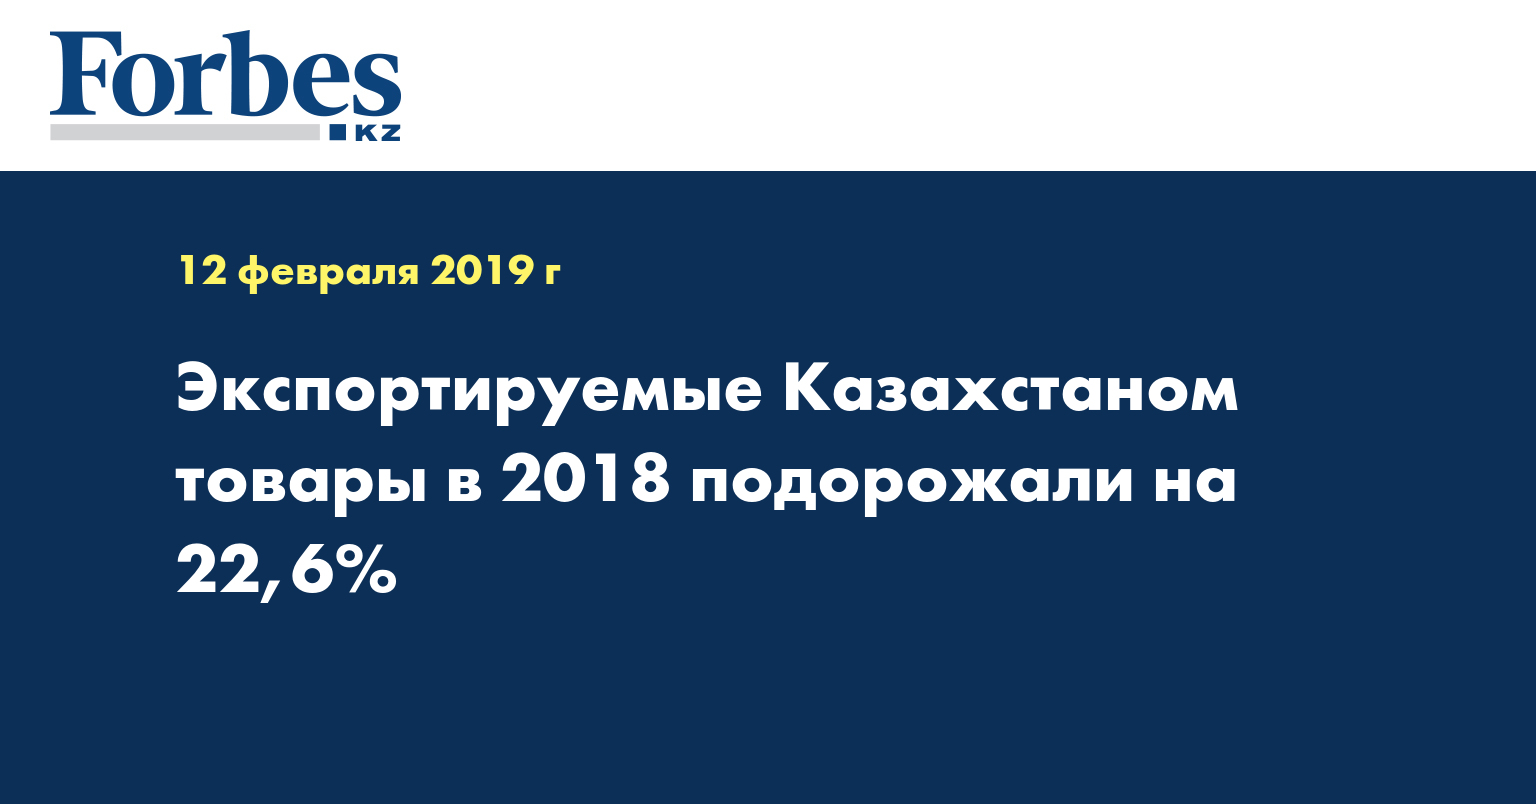 Экспортируемые Казахстаном товары в 2018 подорожали на 22,6%